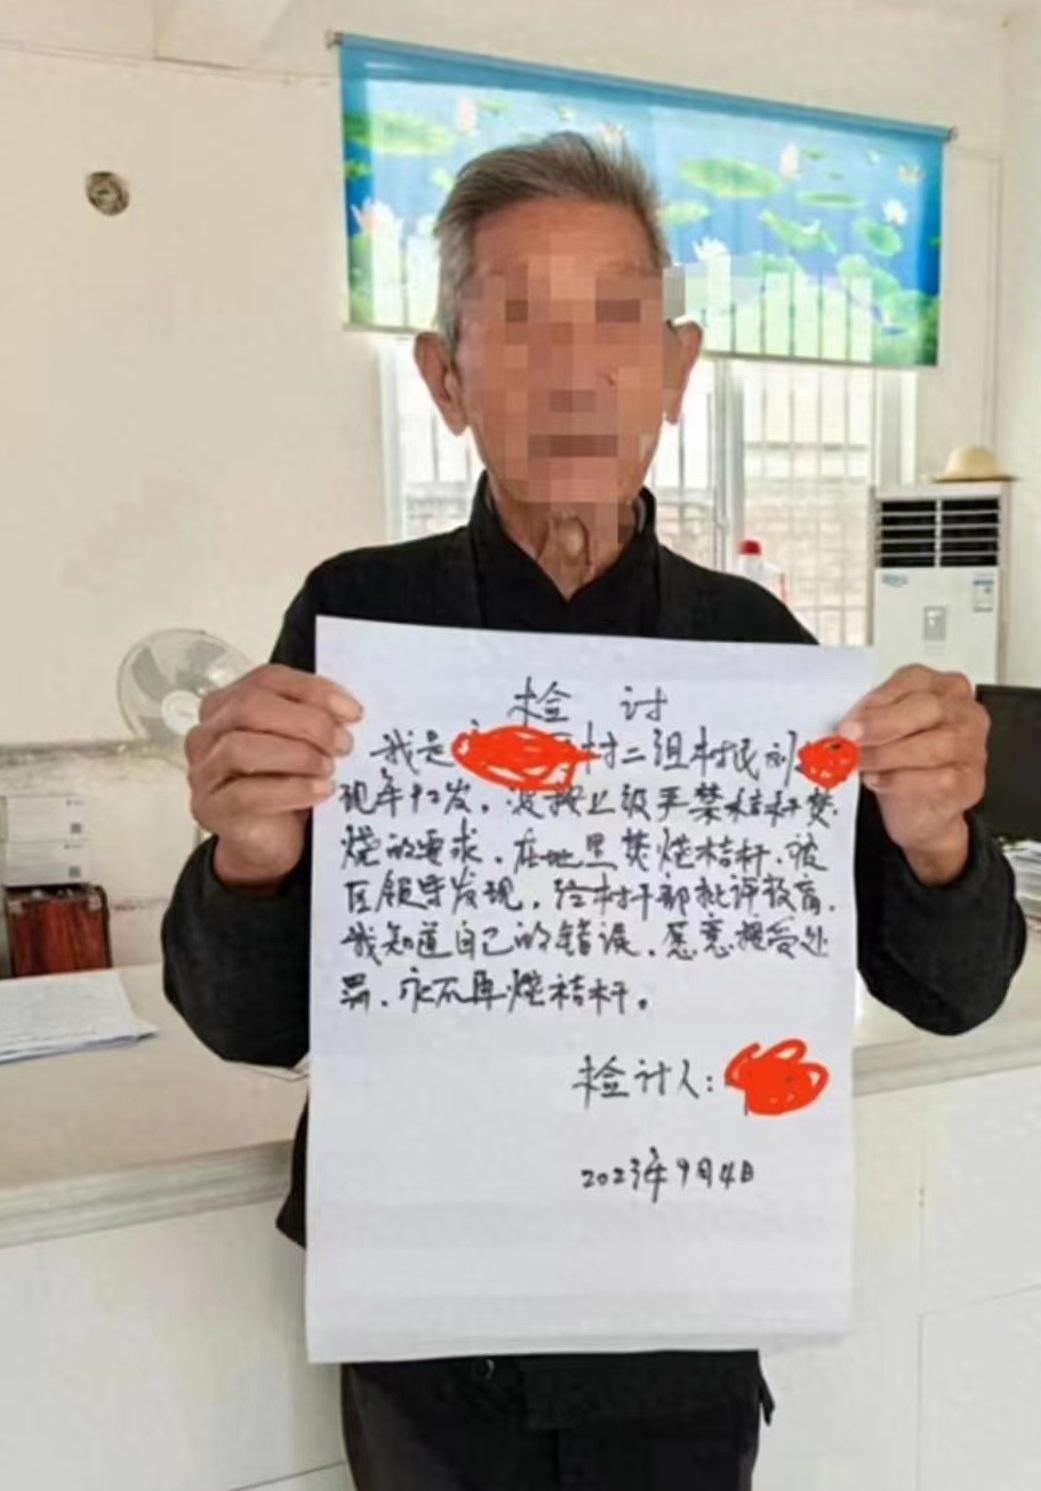 陕西汉中92岁老人烧秸秆被罚写检讨 村民烧秸秆意外引发悲剧 眼前一幕让人心疼得想哭